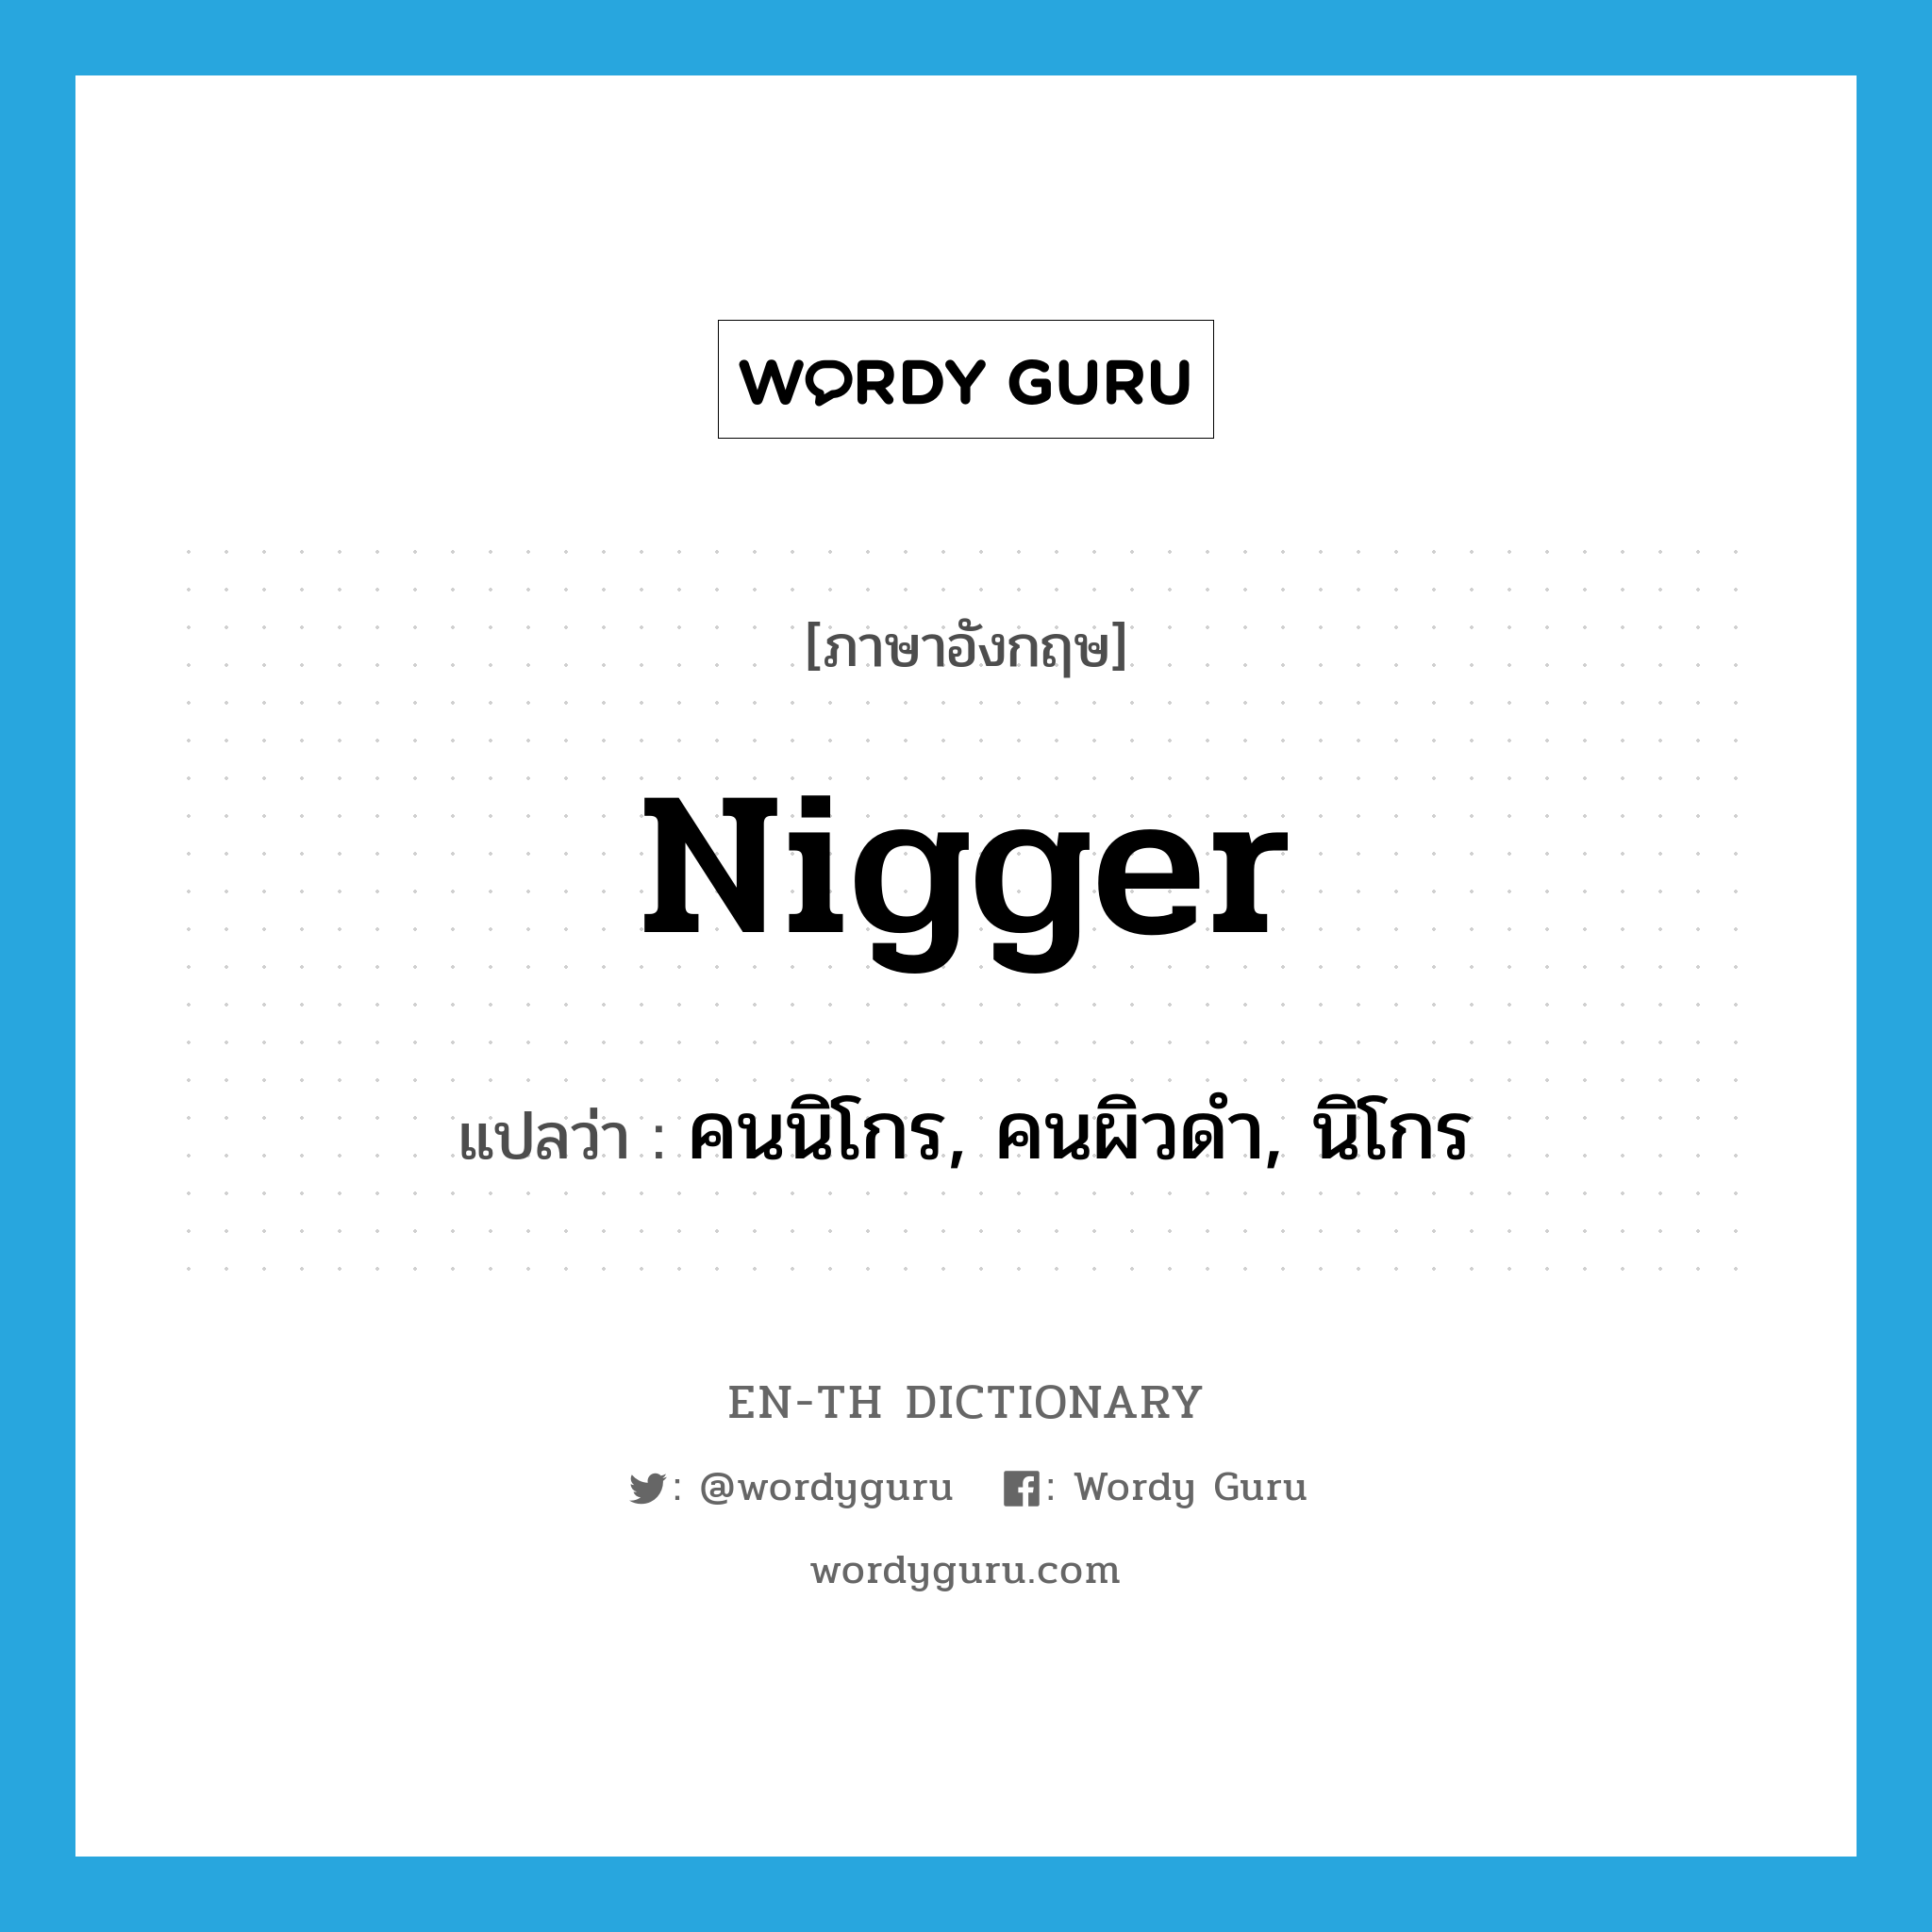 คนนิโกร, คนผิวดำ, นิโกร ภาษาอังกฤษ?, คำศัพท์ภาษาอังกฤษ คนนิโกร, คนผิวดำ, นิโกร แปลว่า nigger ประเภท N หมวด N